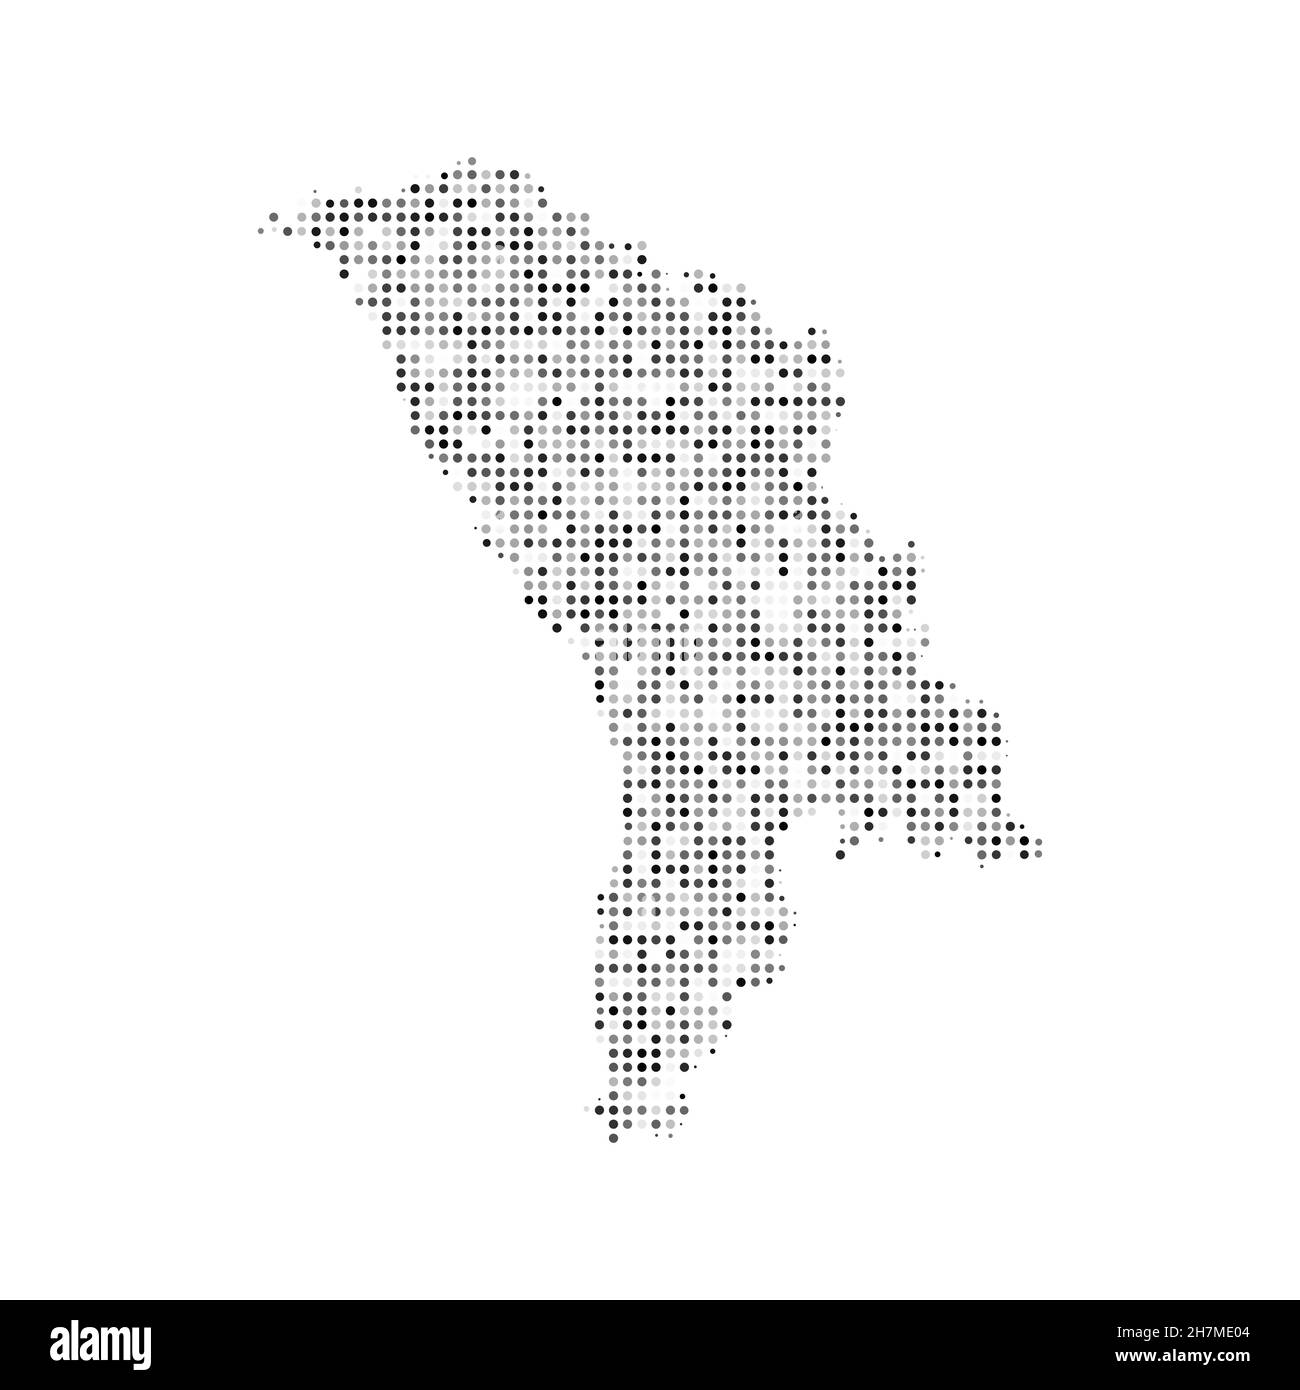 Abstrakte gepunktete schwarz-weiße Halbtoneffekt-Vektorkarte von Moldawien. Landeskarte digitale gepunktete Design-Vektor-Illustration. Stock Vektor